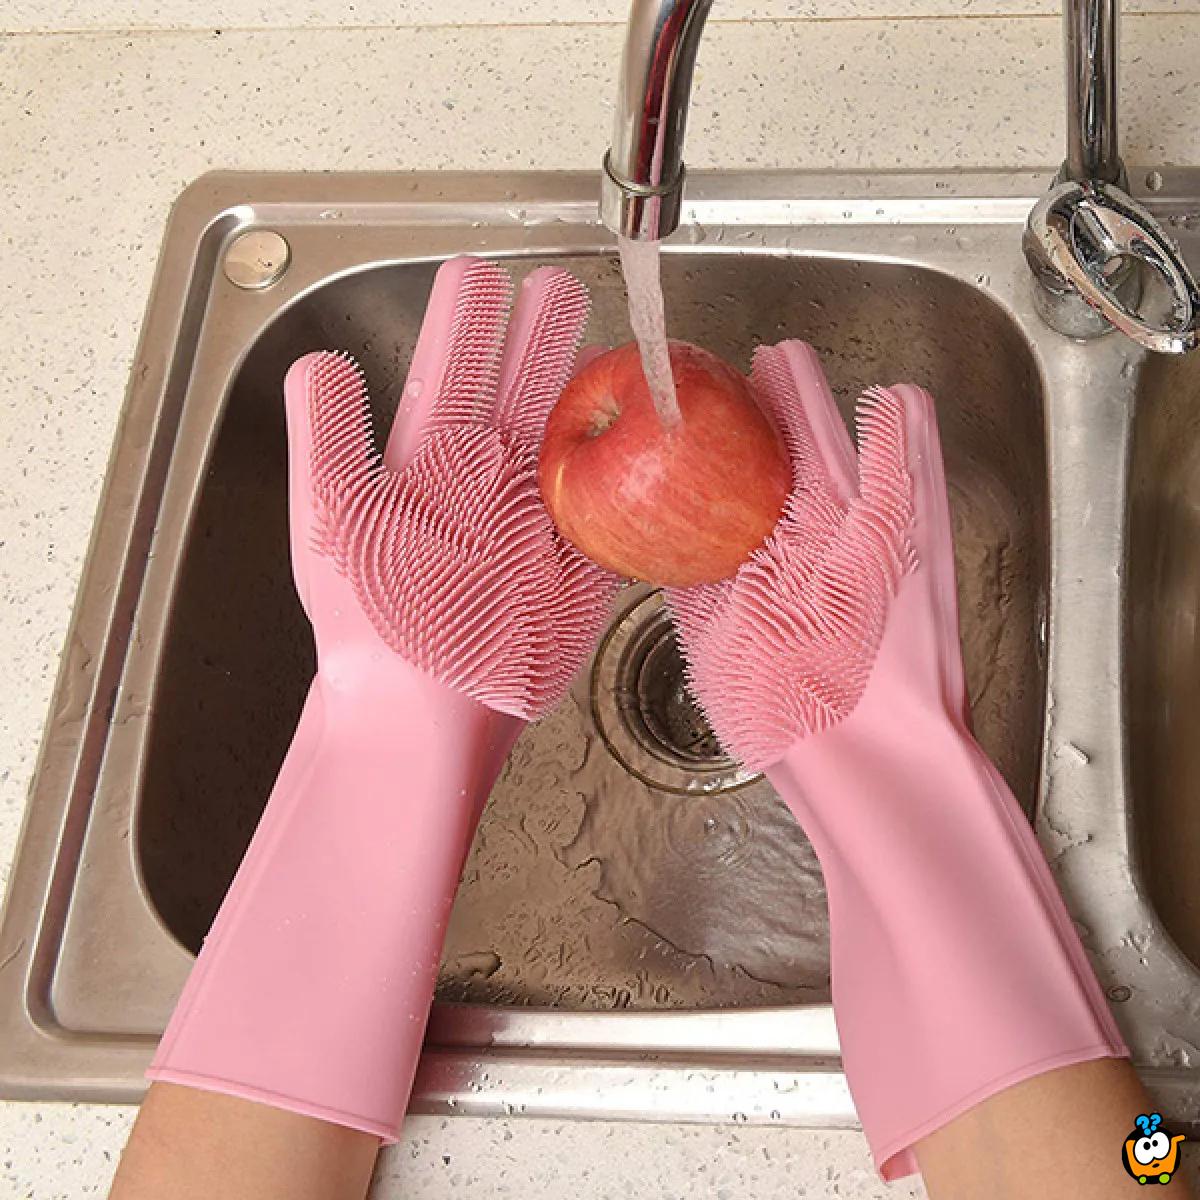 Višenamenske silikonske rukavice za pranje sudova, hrane i za druge kućne poslove